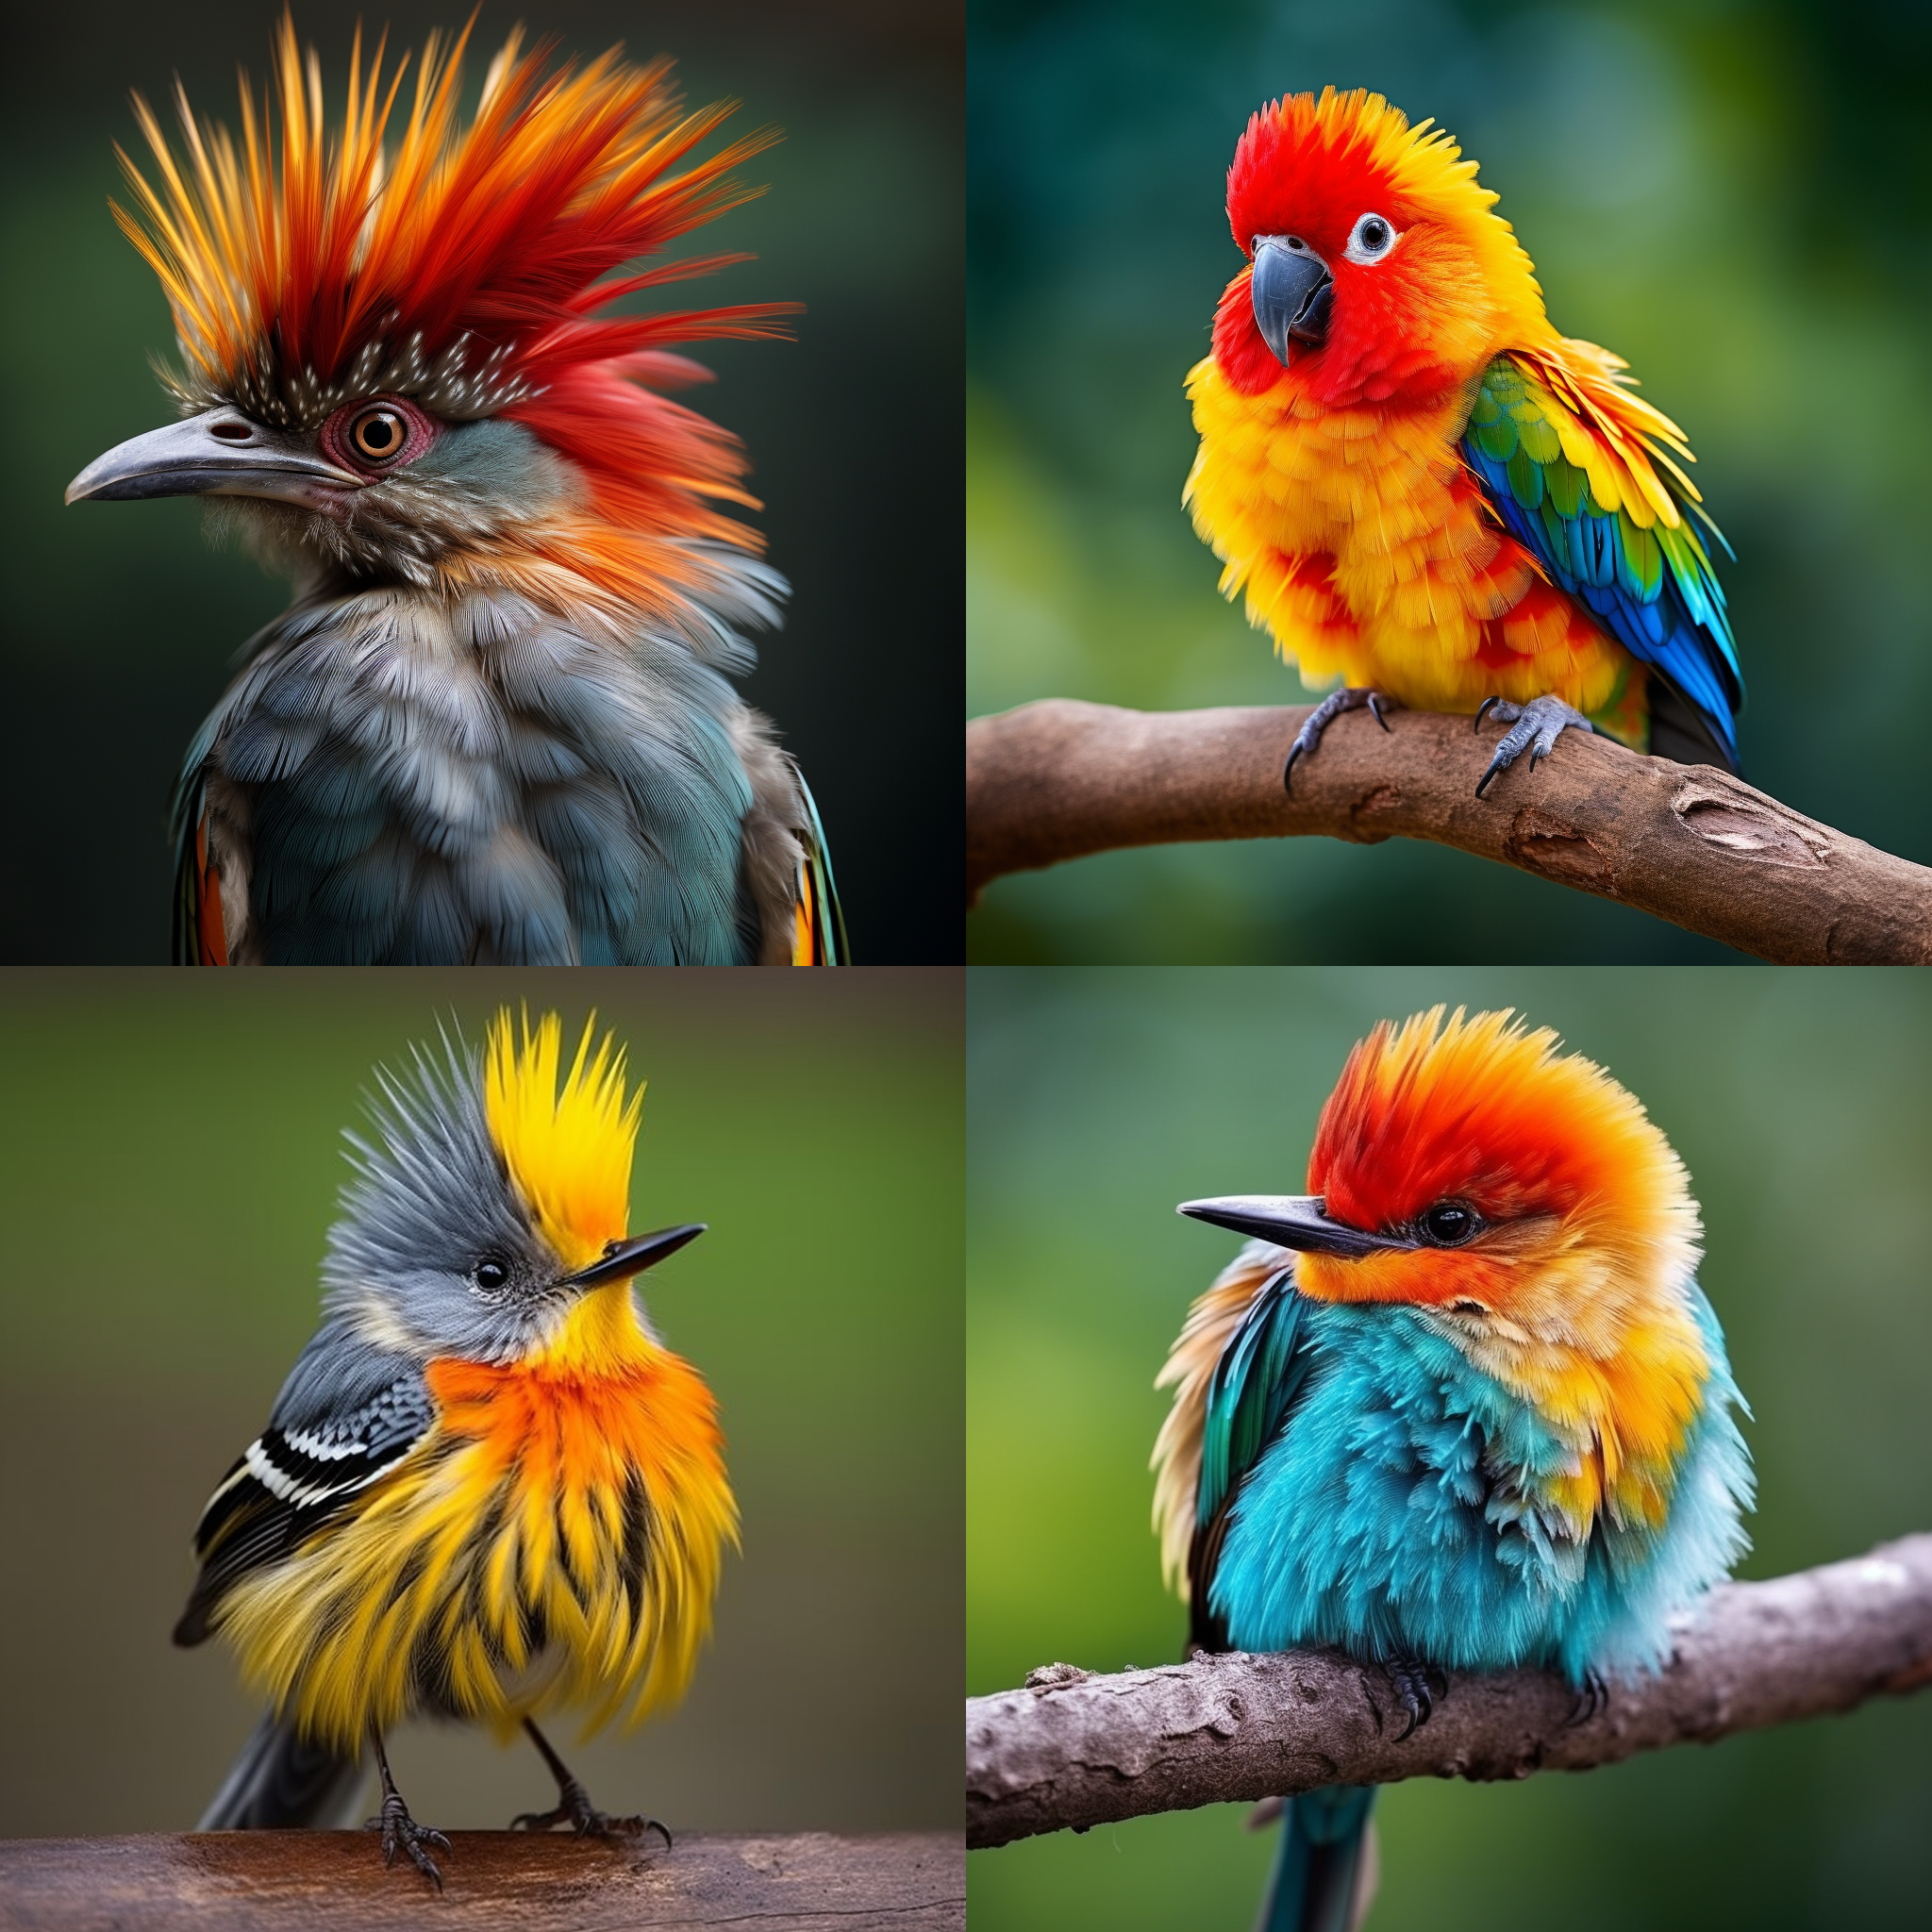 Funny Bird Names - A List of Weird, Wacky, and Unforgettable Avian